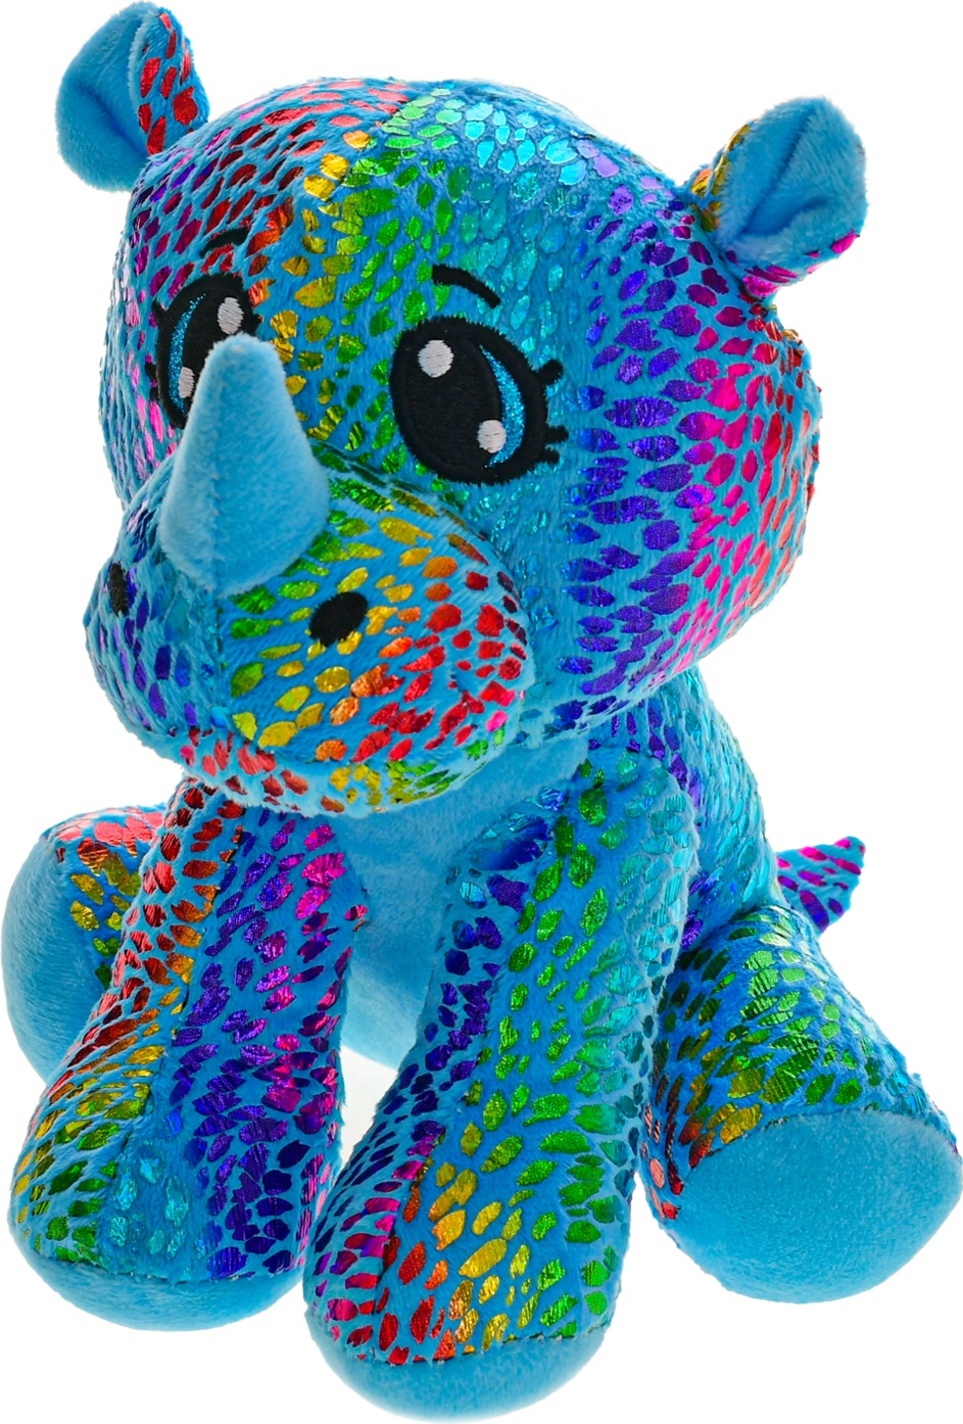 Nosorožec Star Sparkle plyšový modrý 16cm sedící